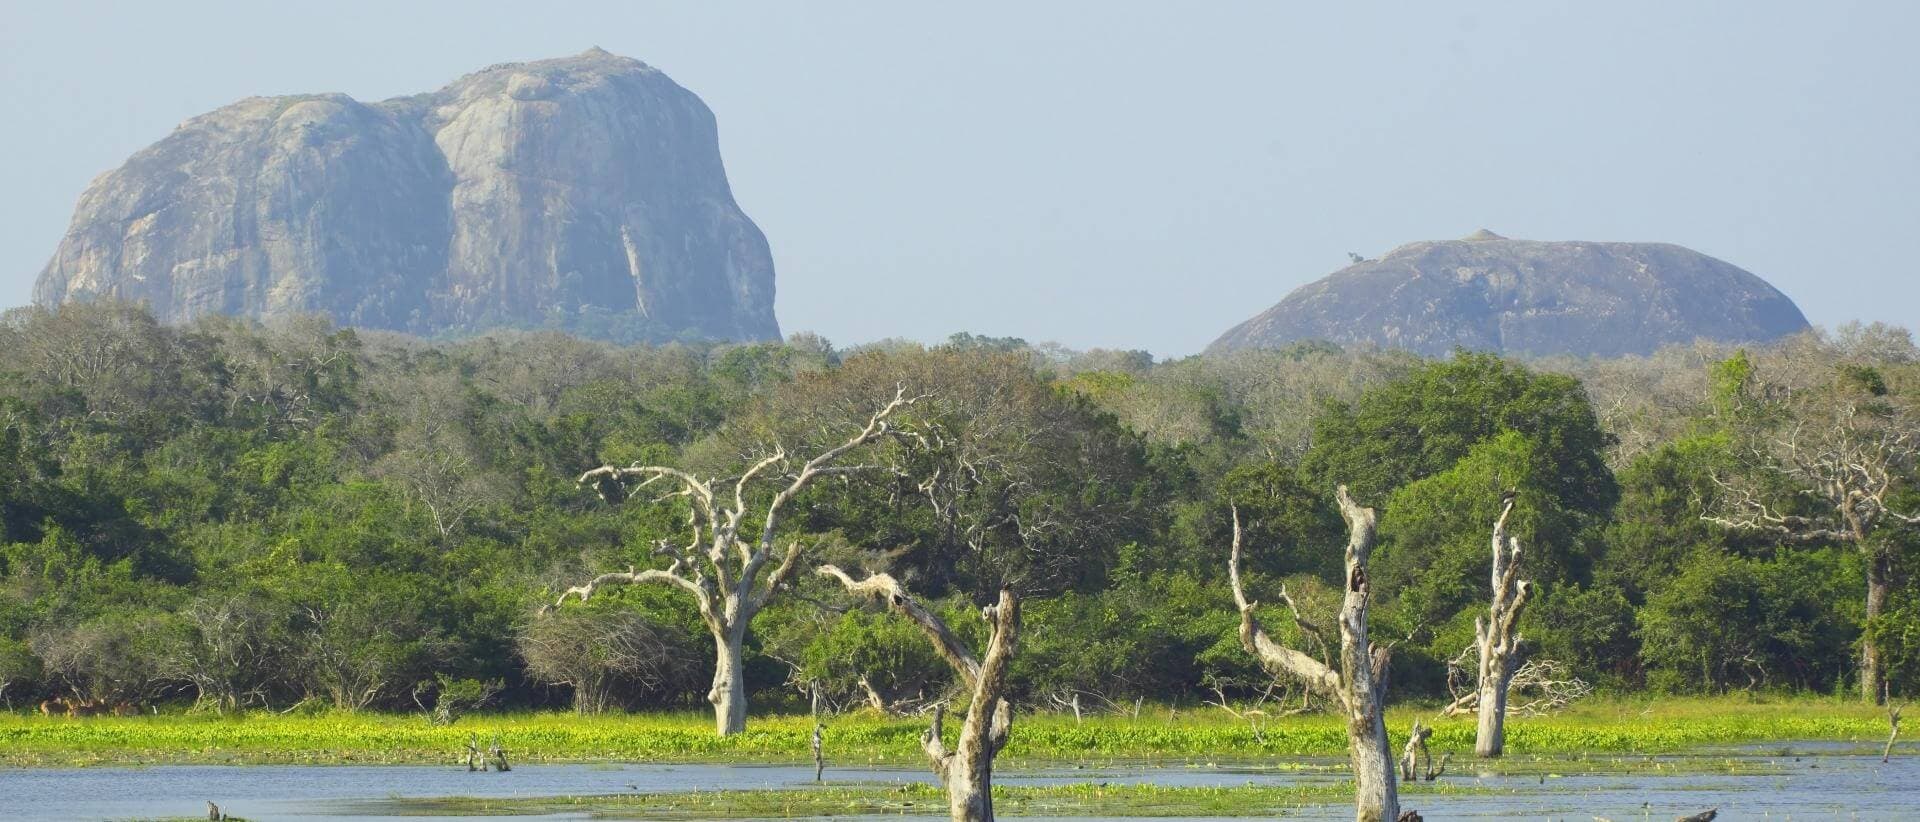 منظر جميل لمتنزه يالا الوطني مع الحياة البرية فيه ، سريلانكا.